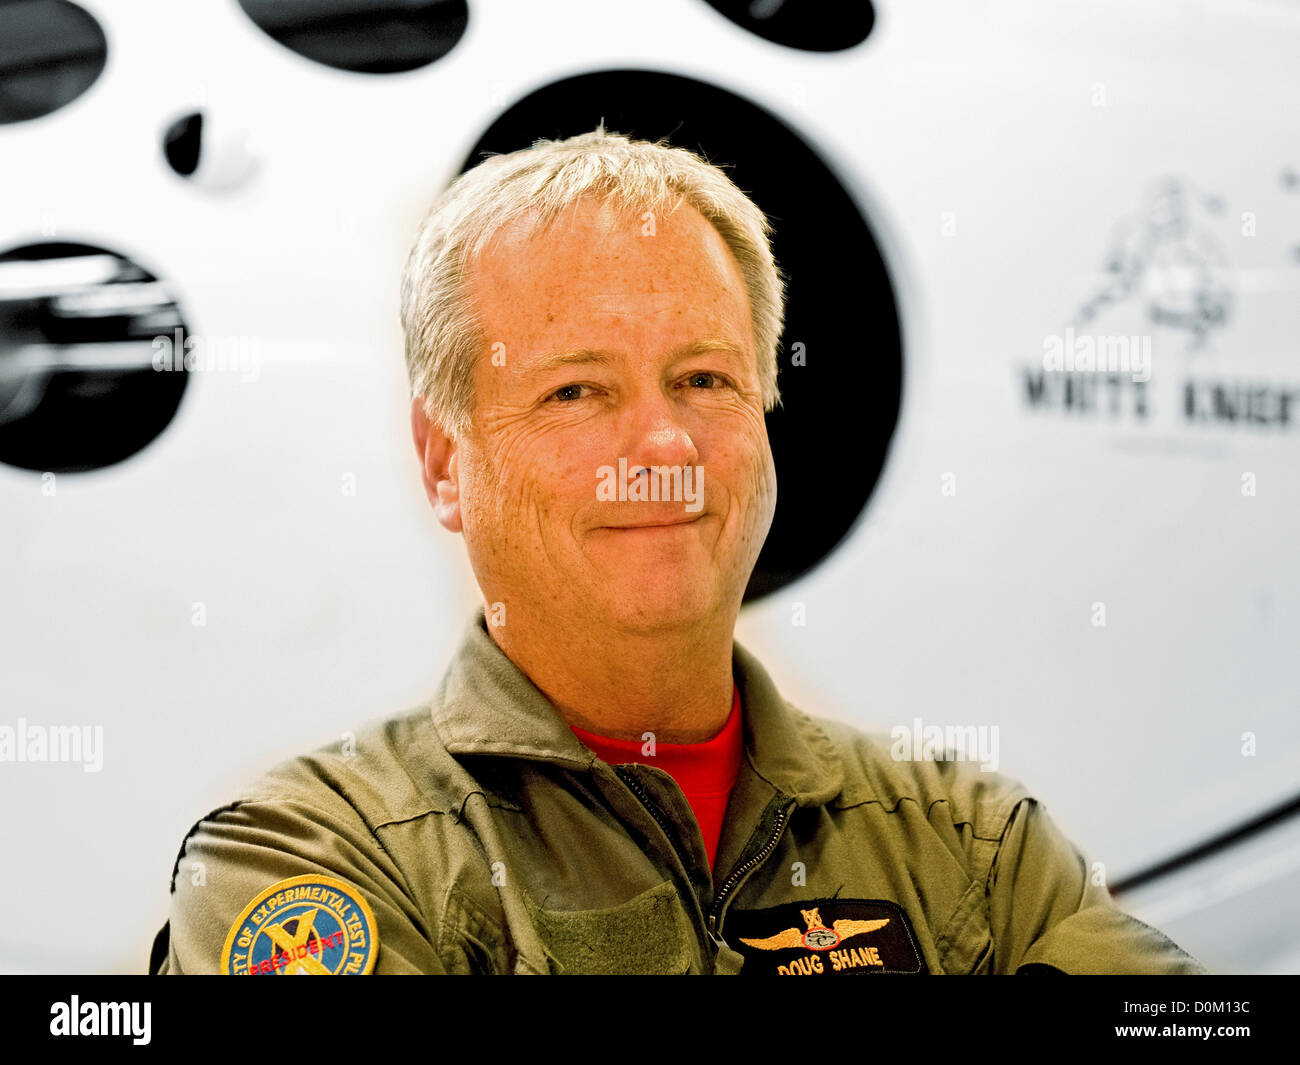 Pilote d'essai plus tard président d'aéronefs Scaled Composites Doug Shane se place en avant chevalier blanc porte-avions le SpaceShipOne. Banque D'Images